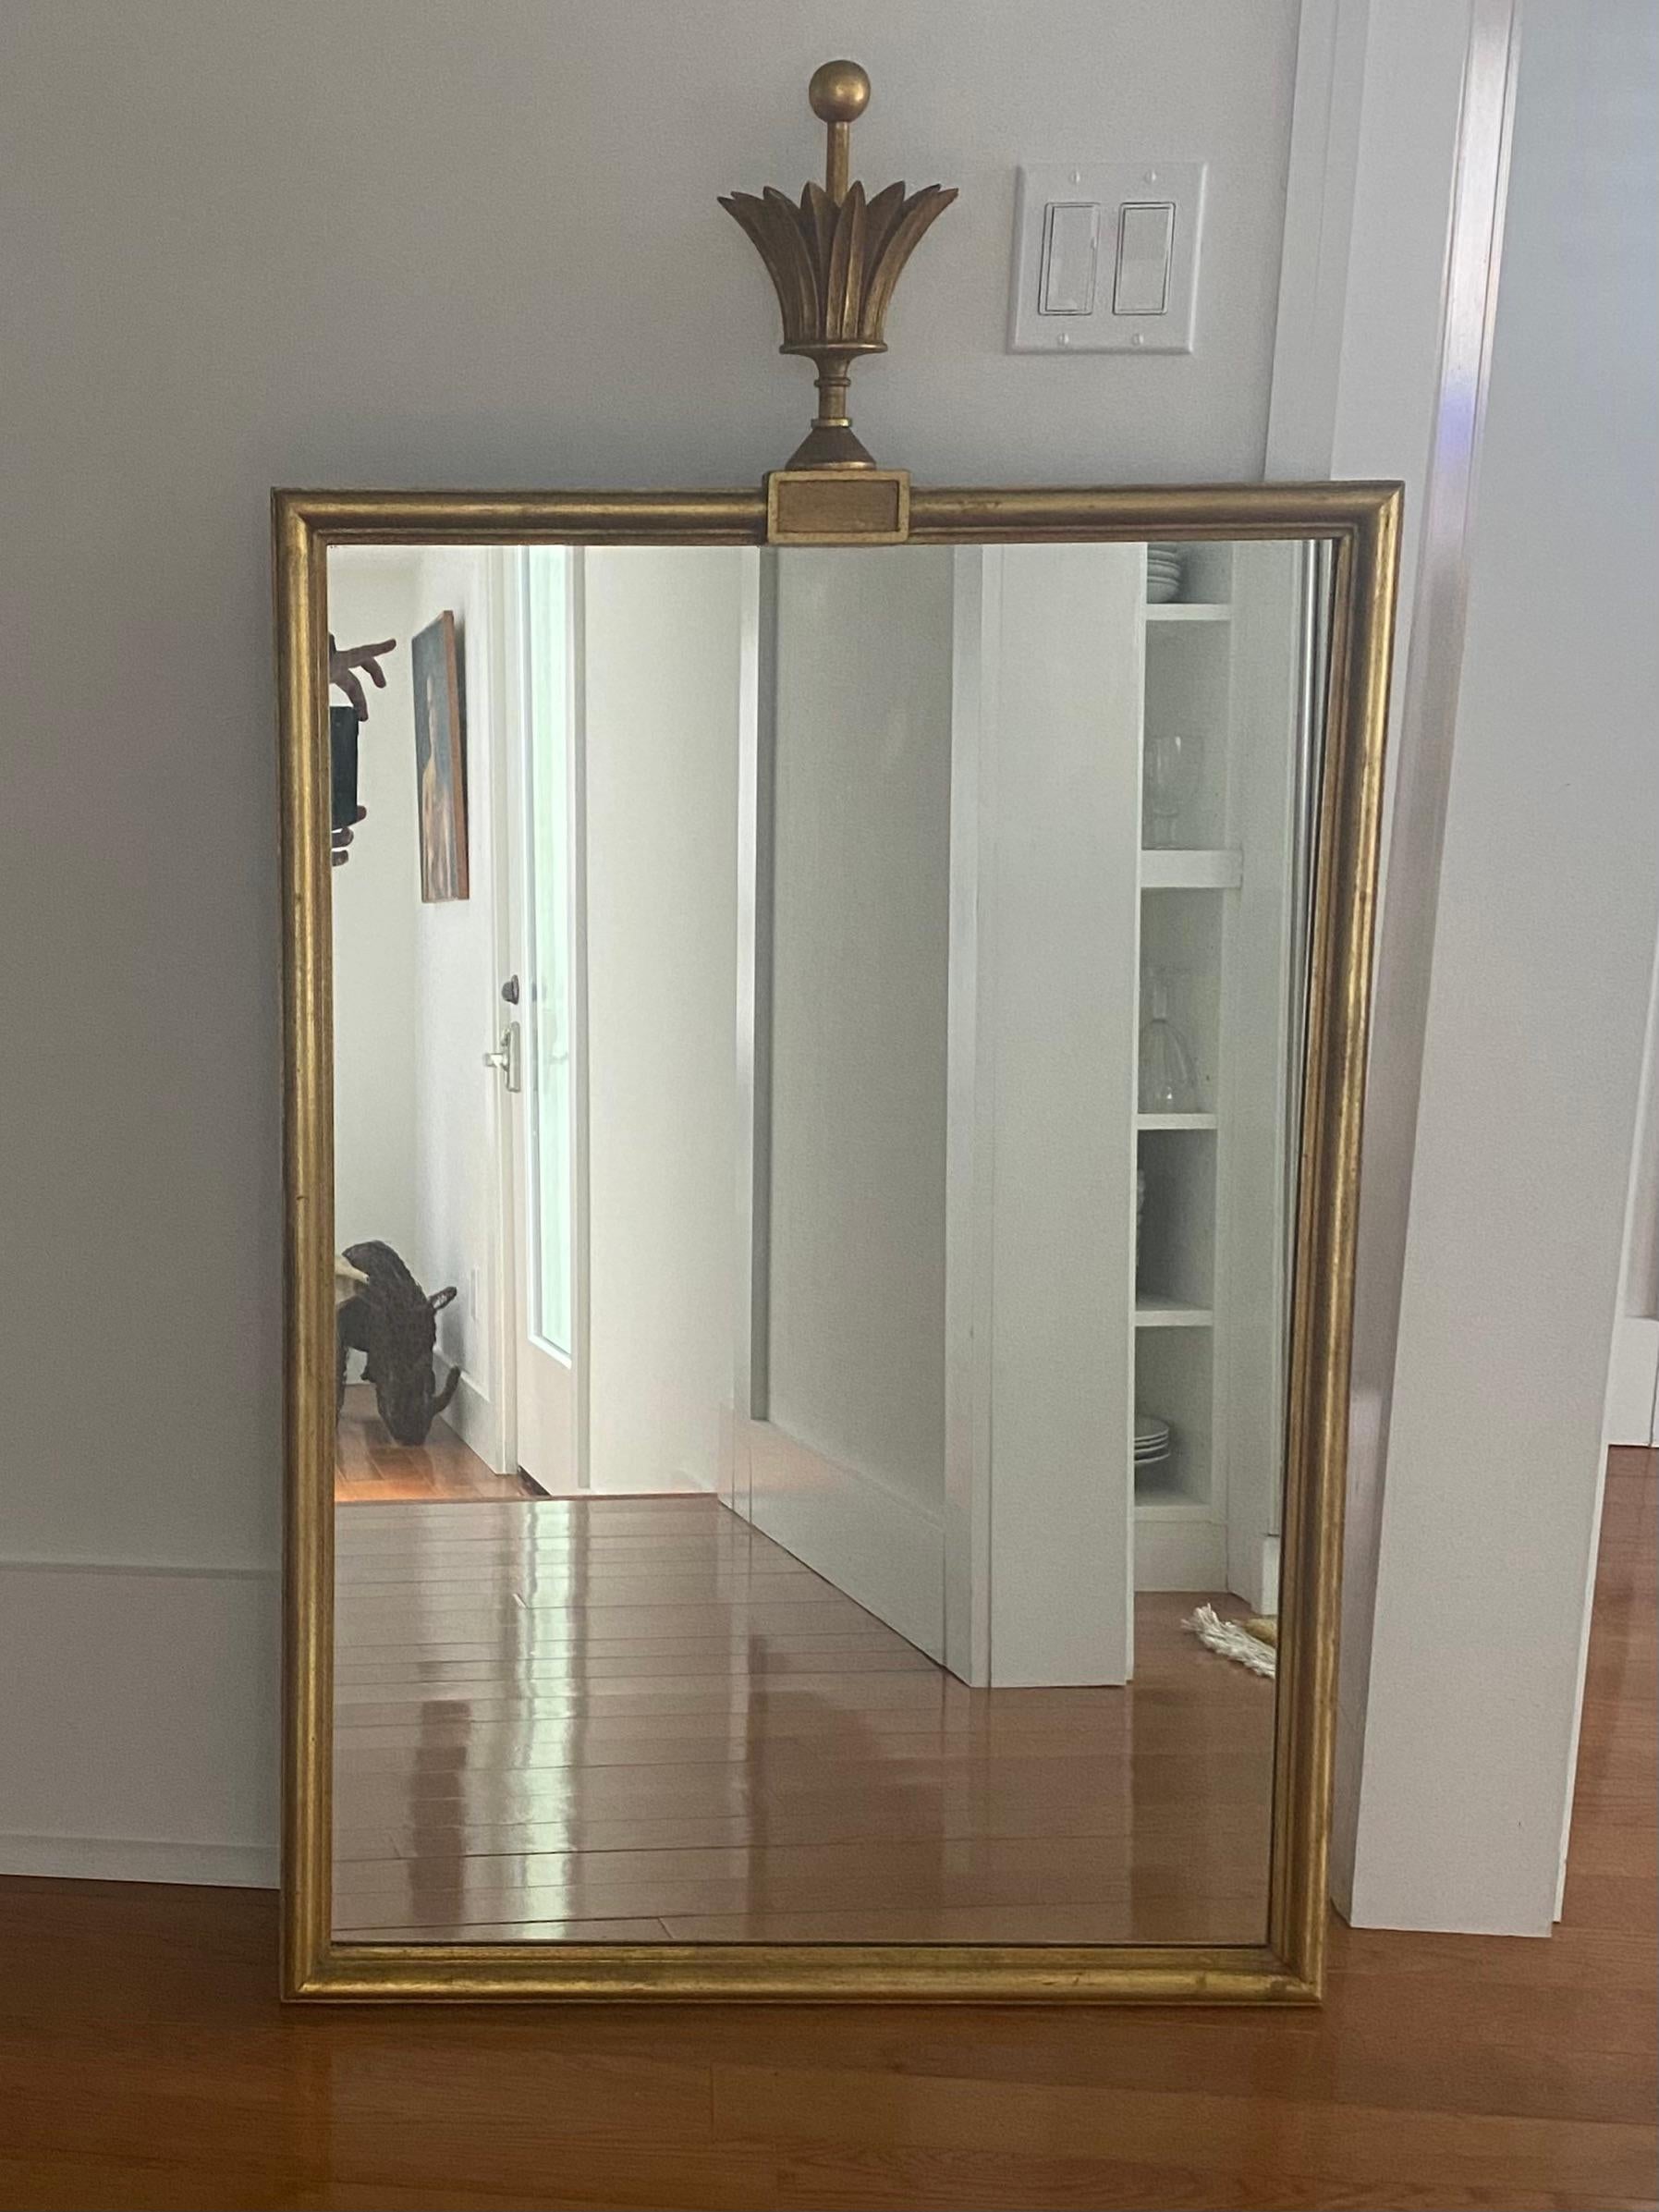 Miroir rectangulaire Tommi Parzinger avec fleuron en forme de couronne.
Labellisé au dos avec D. Milch and Son Inc.
approximativement 28 x 40 pouces plus un épi de faîtage de 10 pouces.